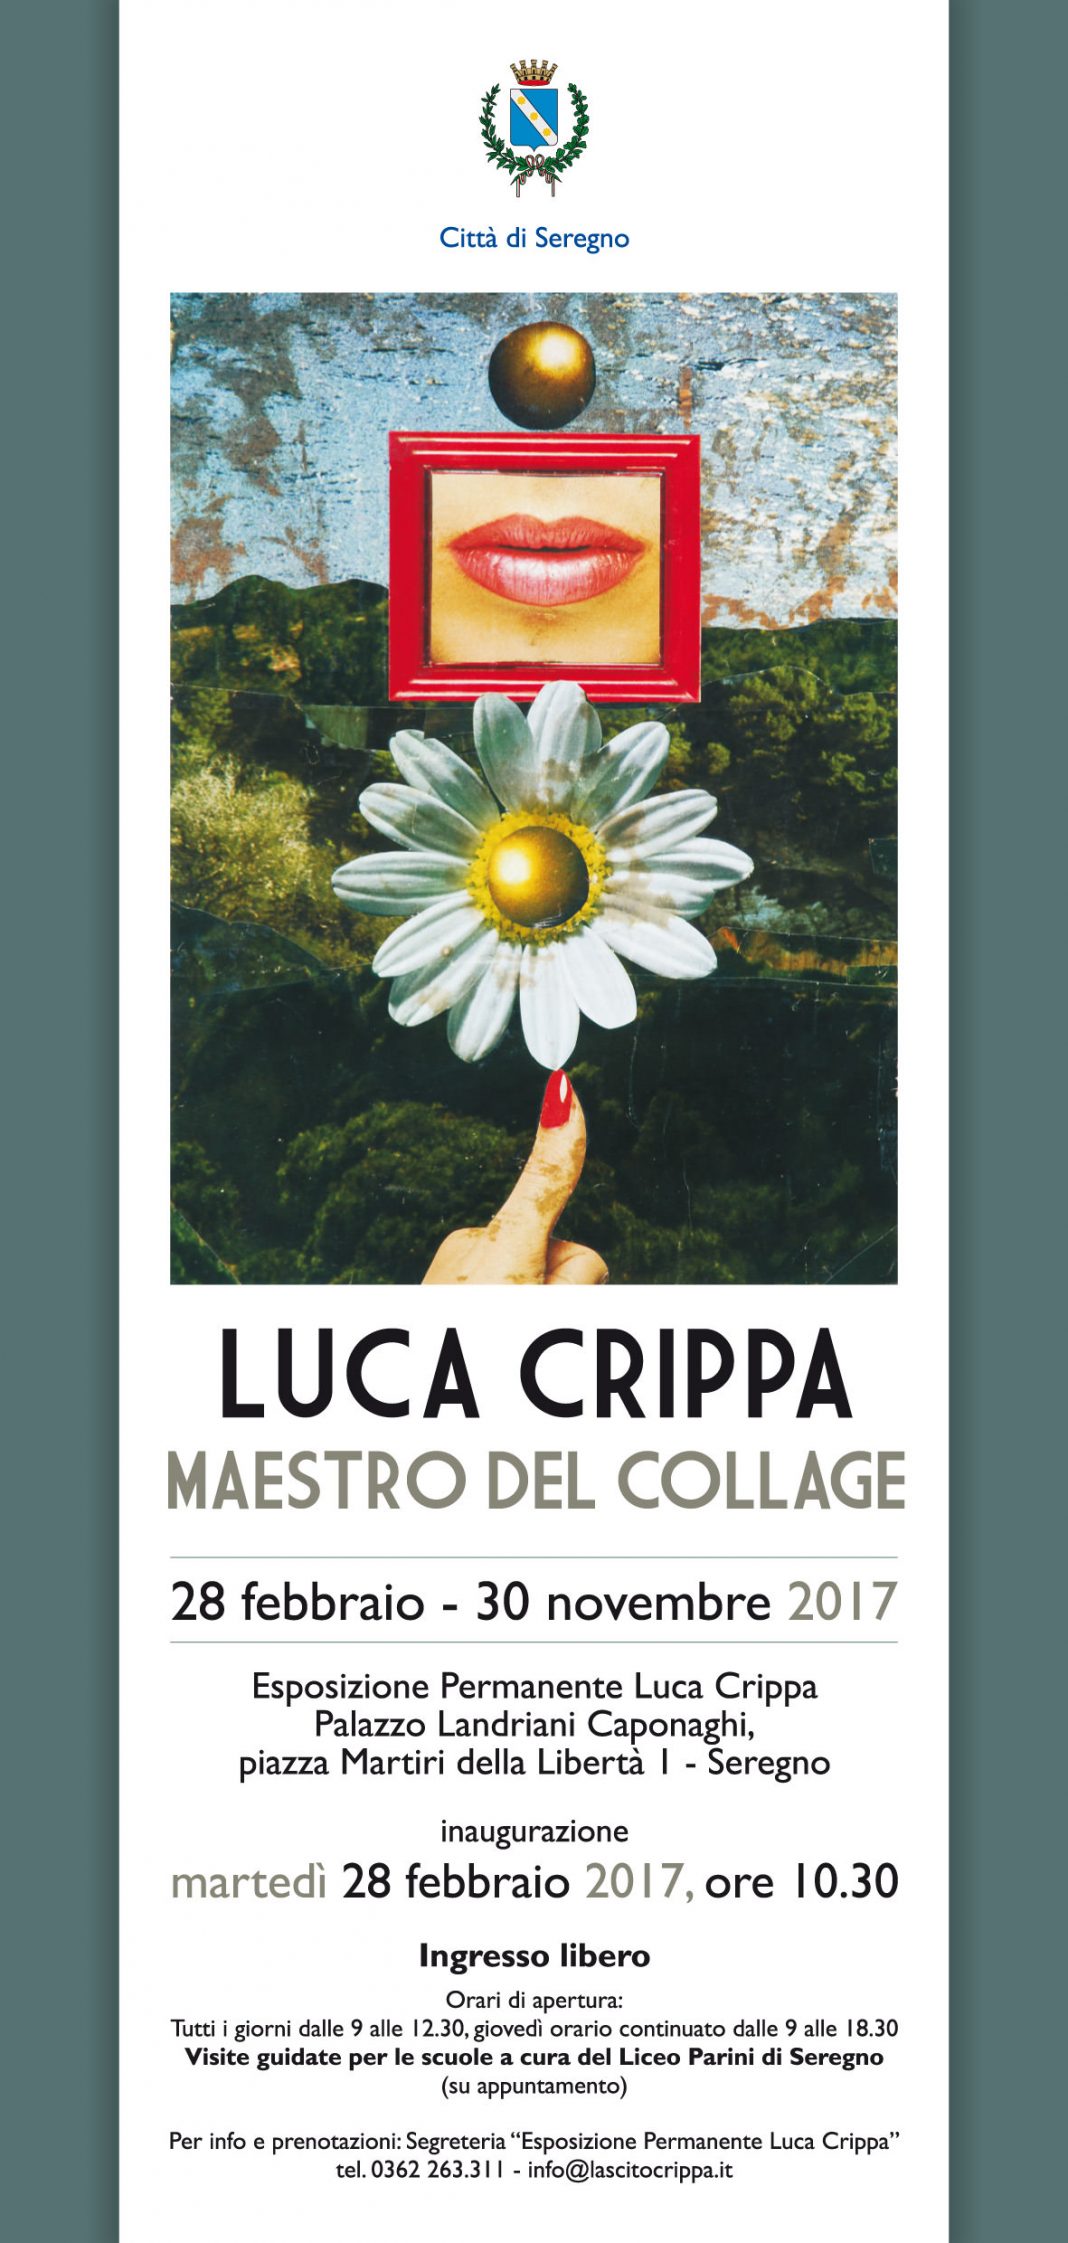 Luca Crippa – Maestro del Collagehttps://www.exibart.com/repository/media/eventi/2017/02/luca-crippa-8211-maestro-del-collage-1068x2243.jpg